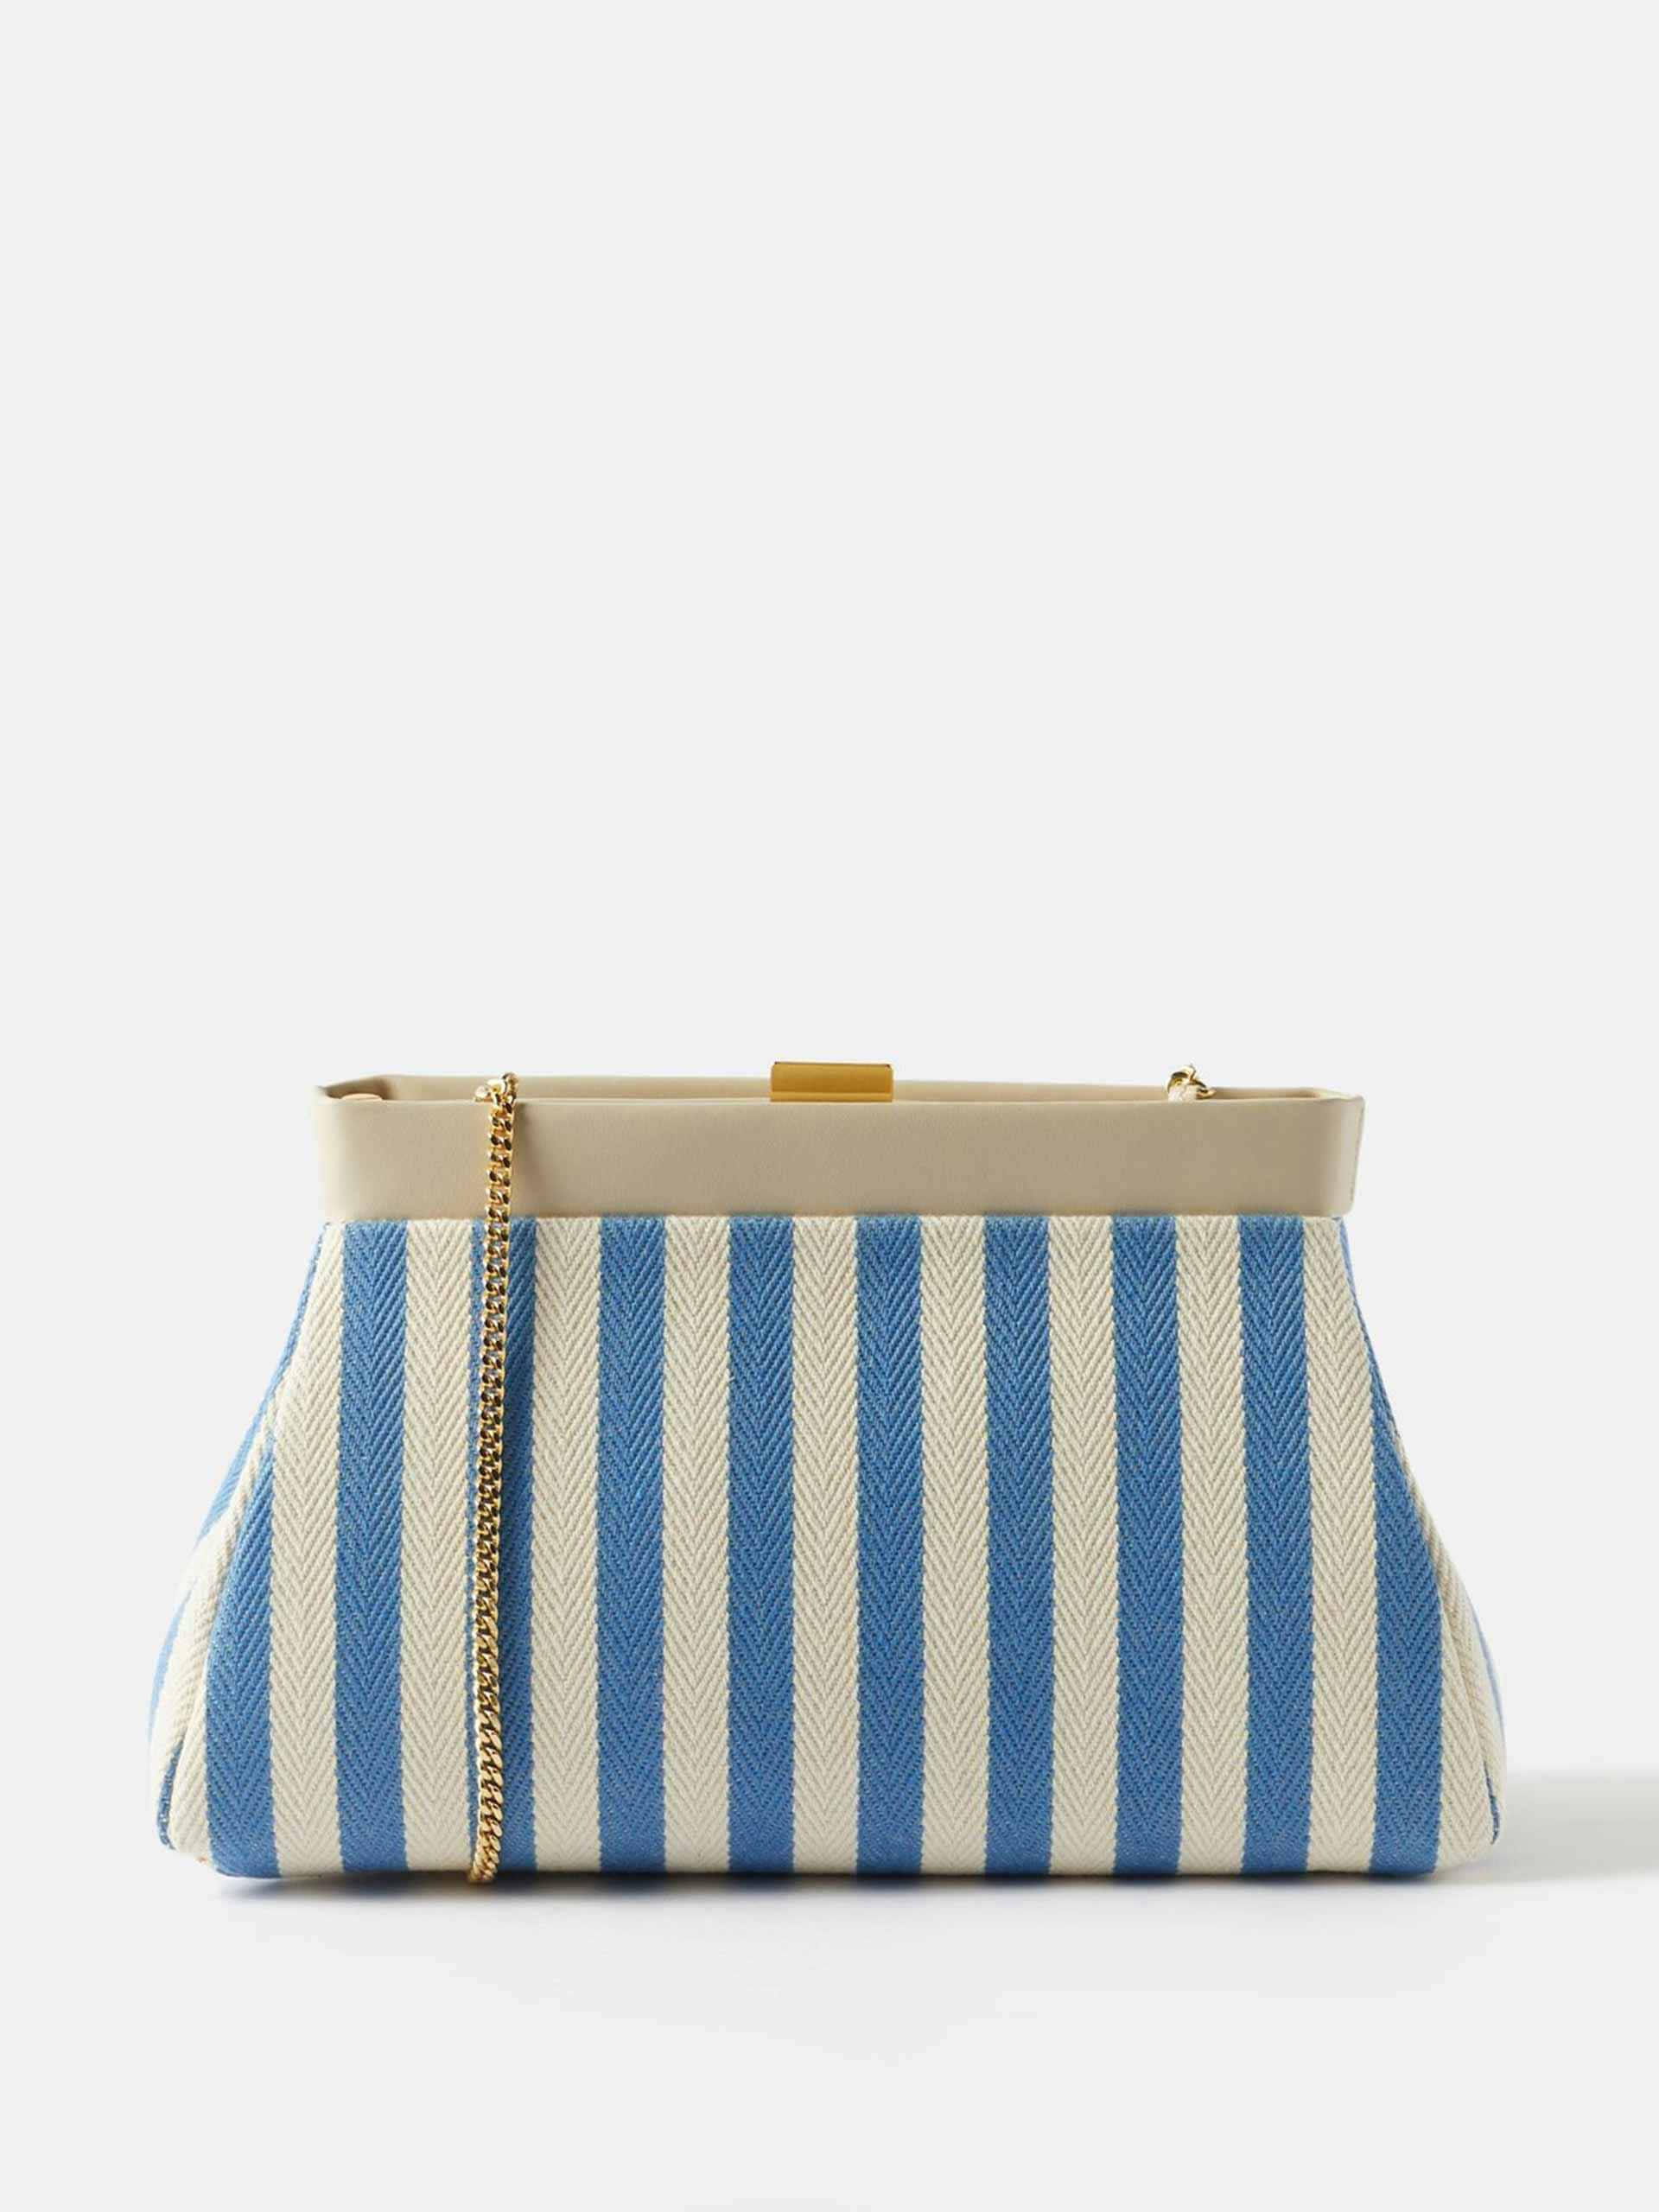 Blue & white striped clutch bag